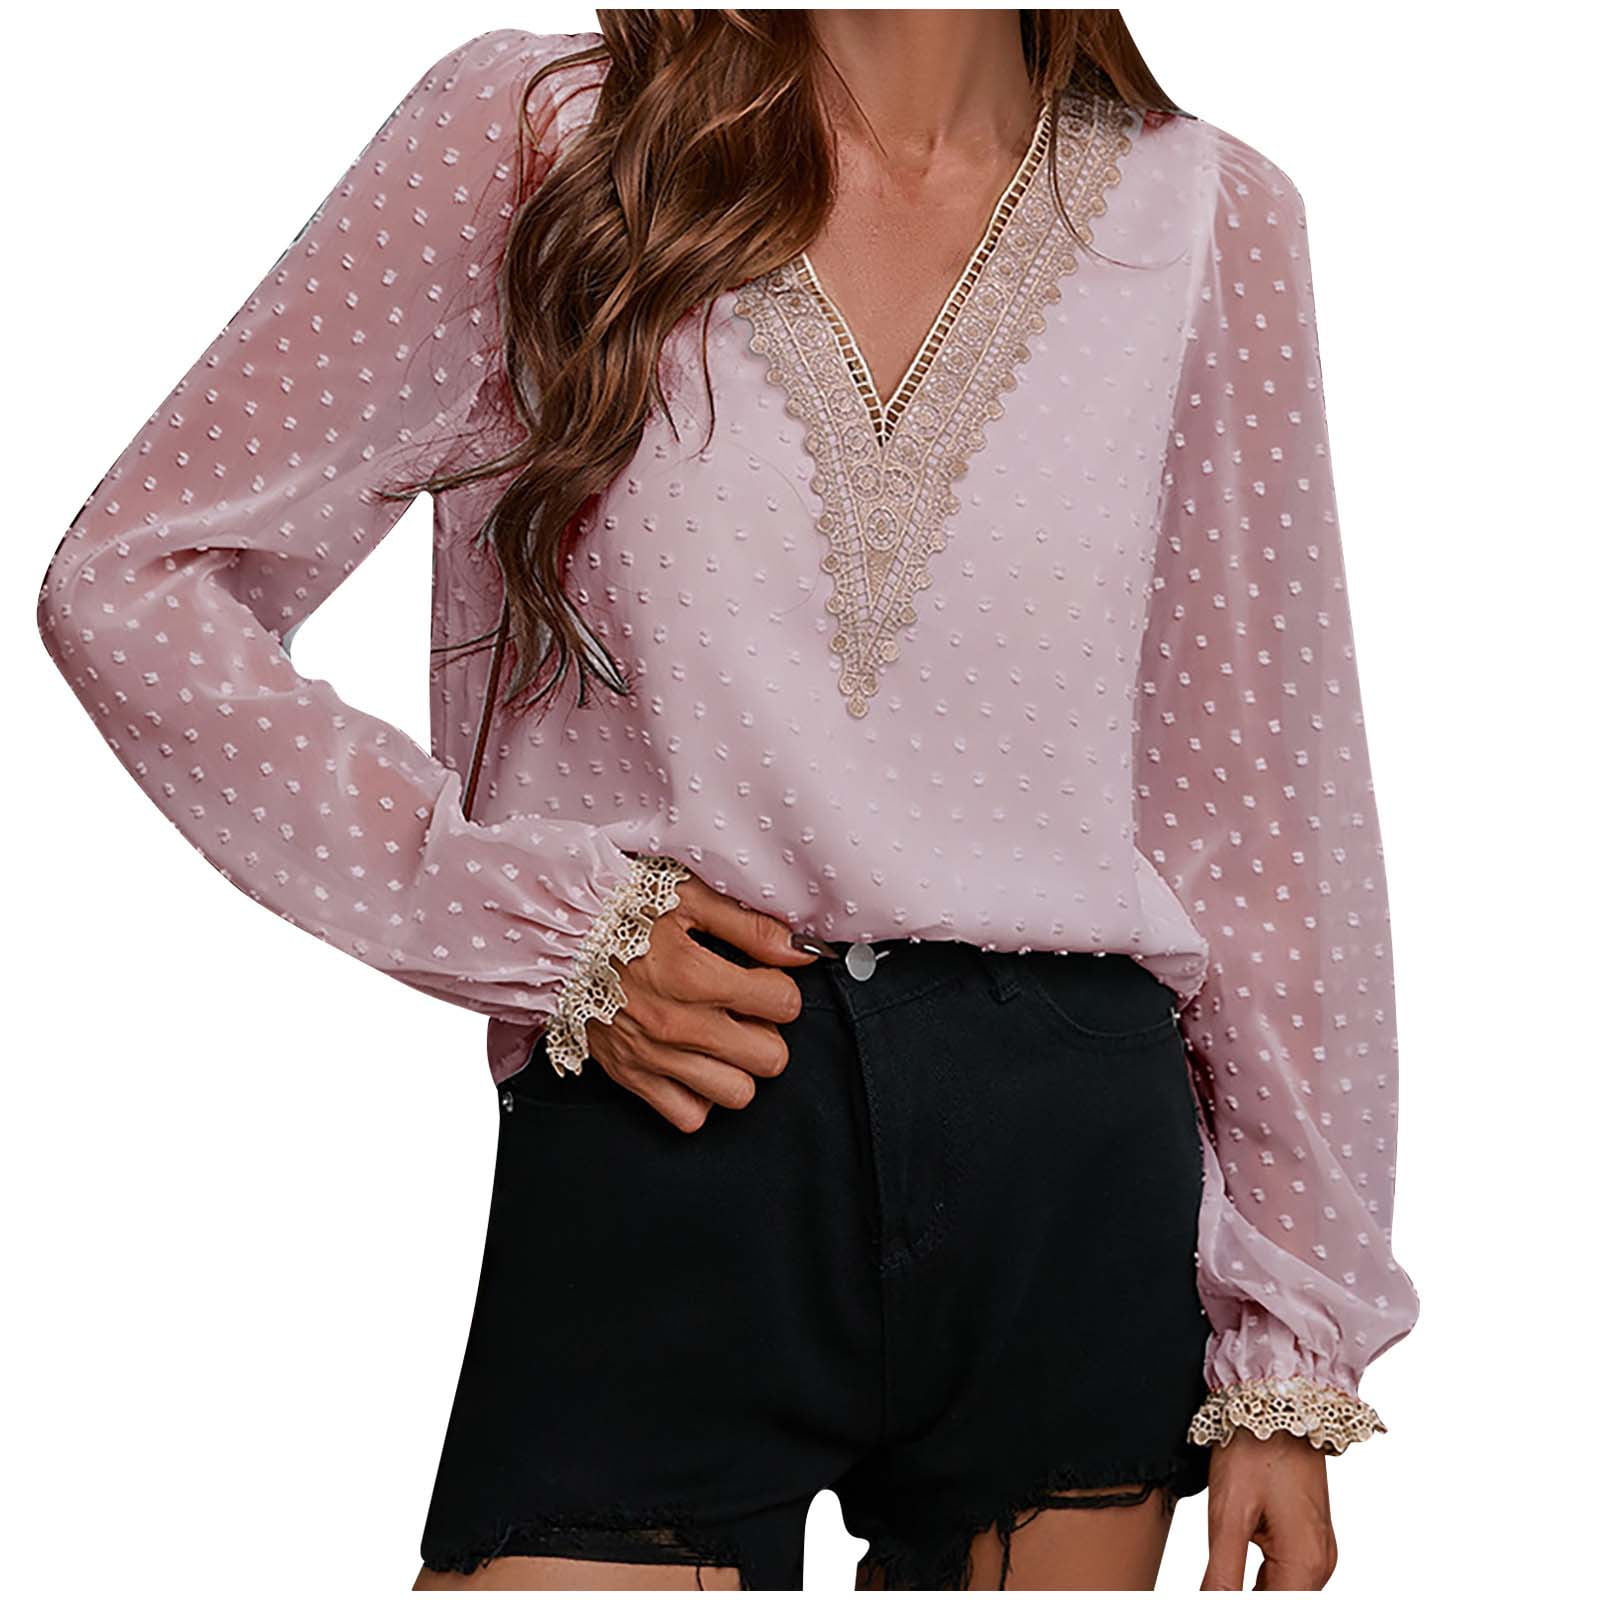 Acelitt Womens Summer Sleeveless Shirt Swiss Dot Lace Blouses Flutter Tops 